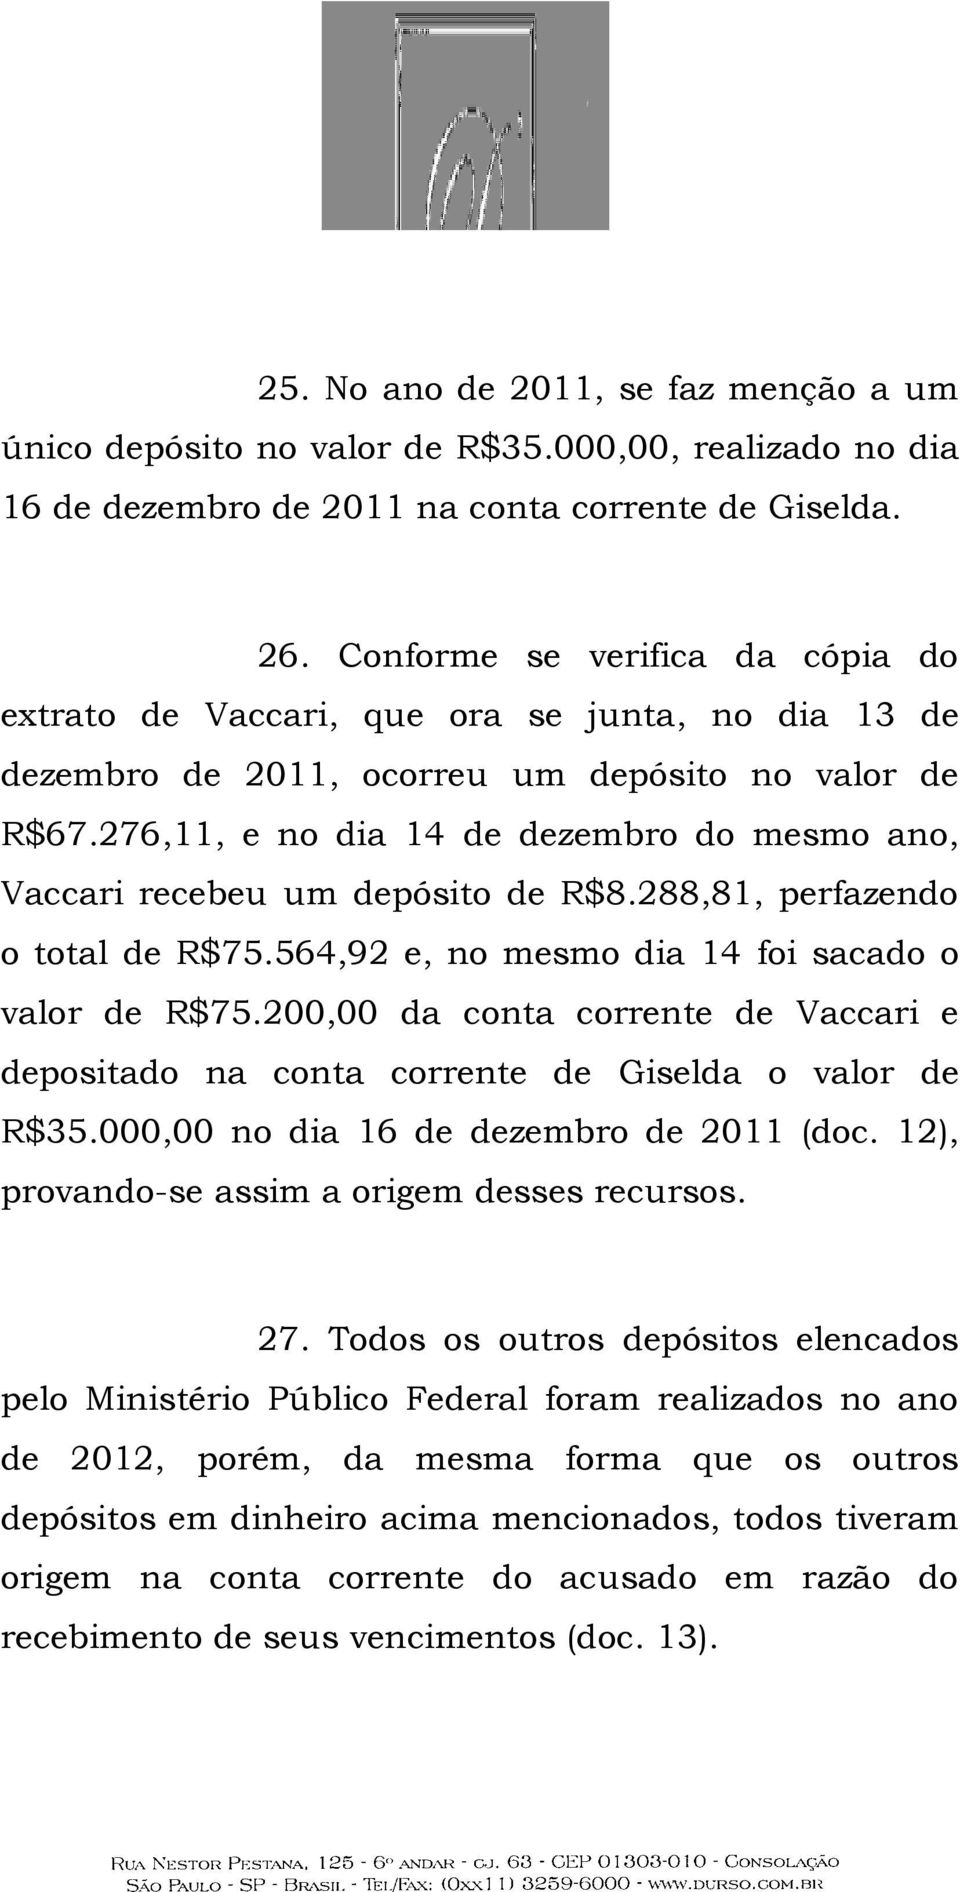 276,11, e no dia 14 de dezembro do mesmo ano, Vaccari recebeu um depósito de R$8.288,81, perfazendo o total de R$75.564,92 e, no mesmo dia 14 foi sacado o valor de R$75.